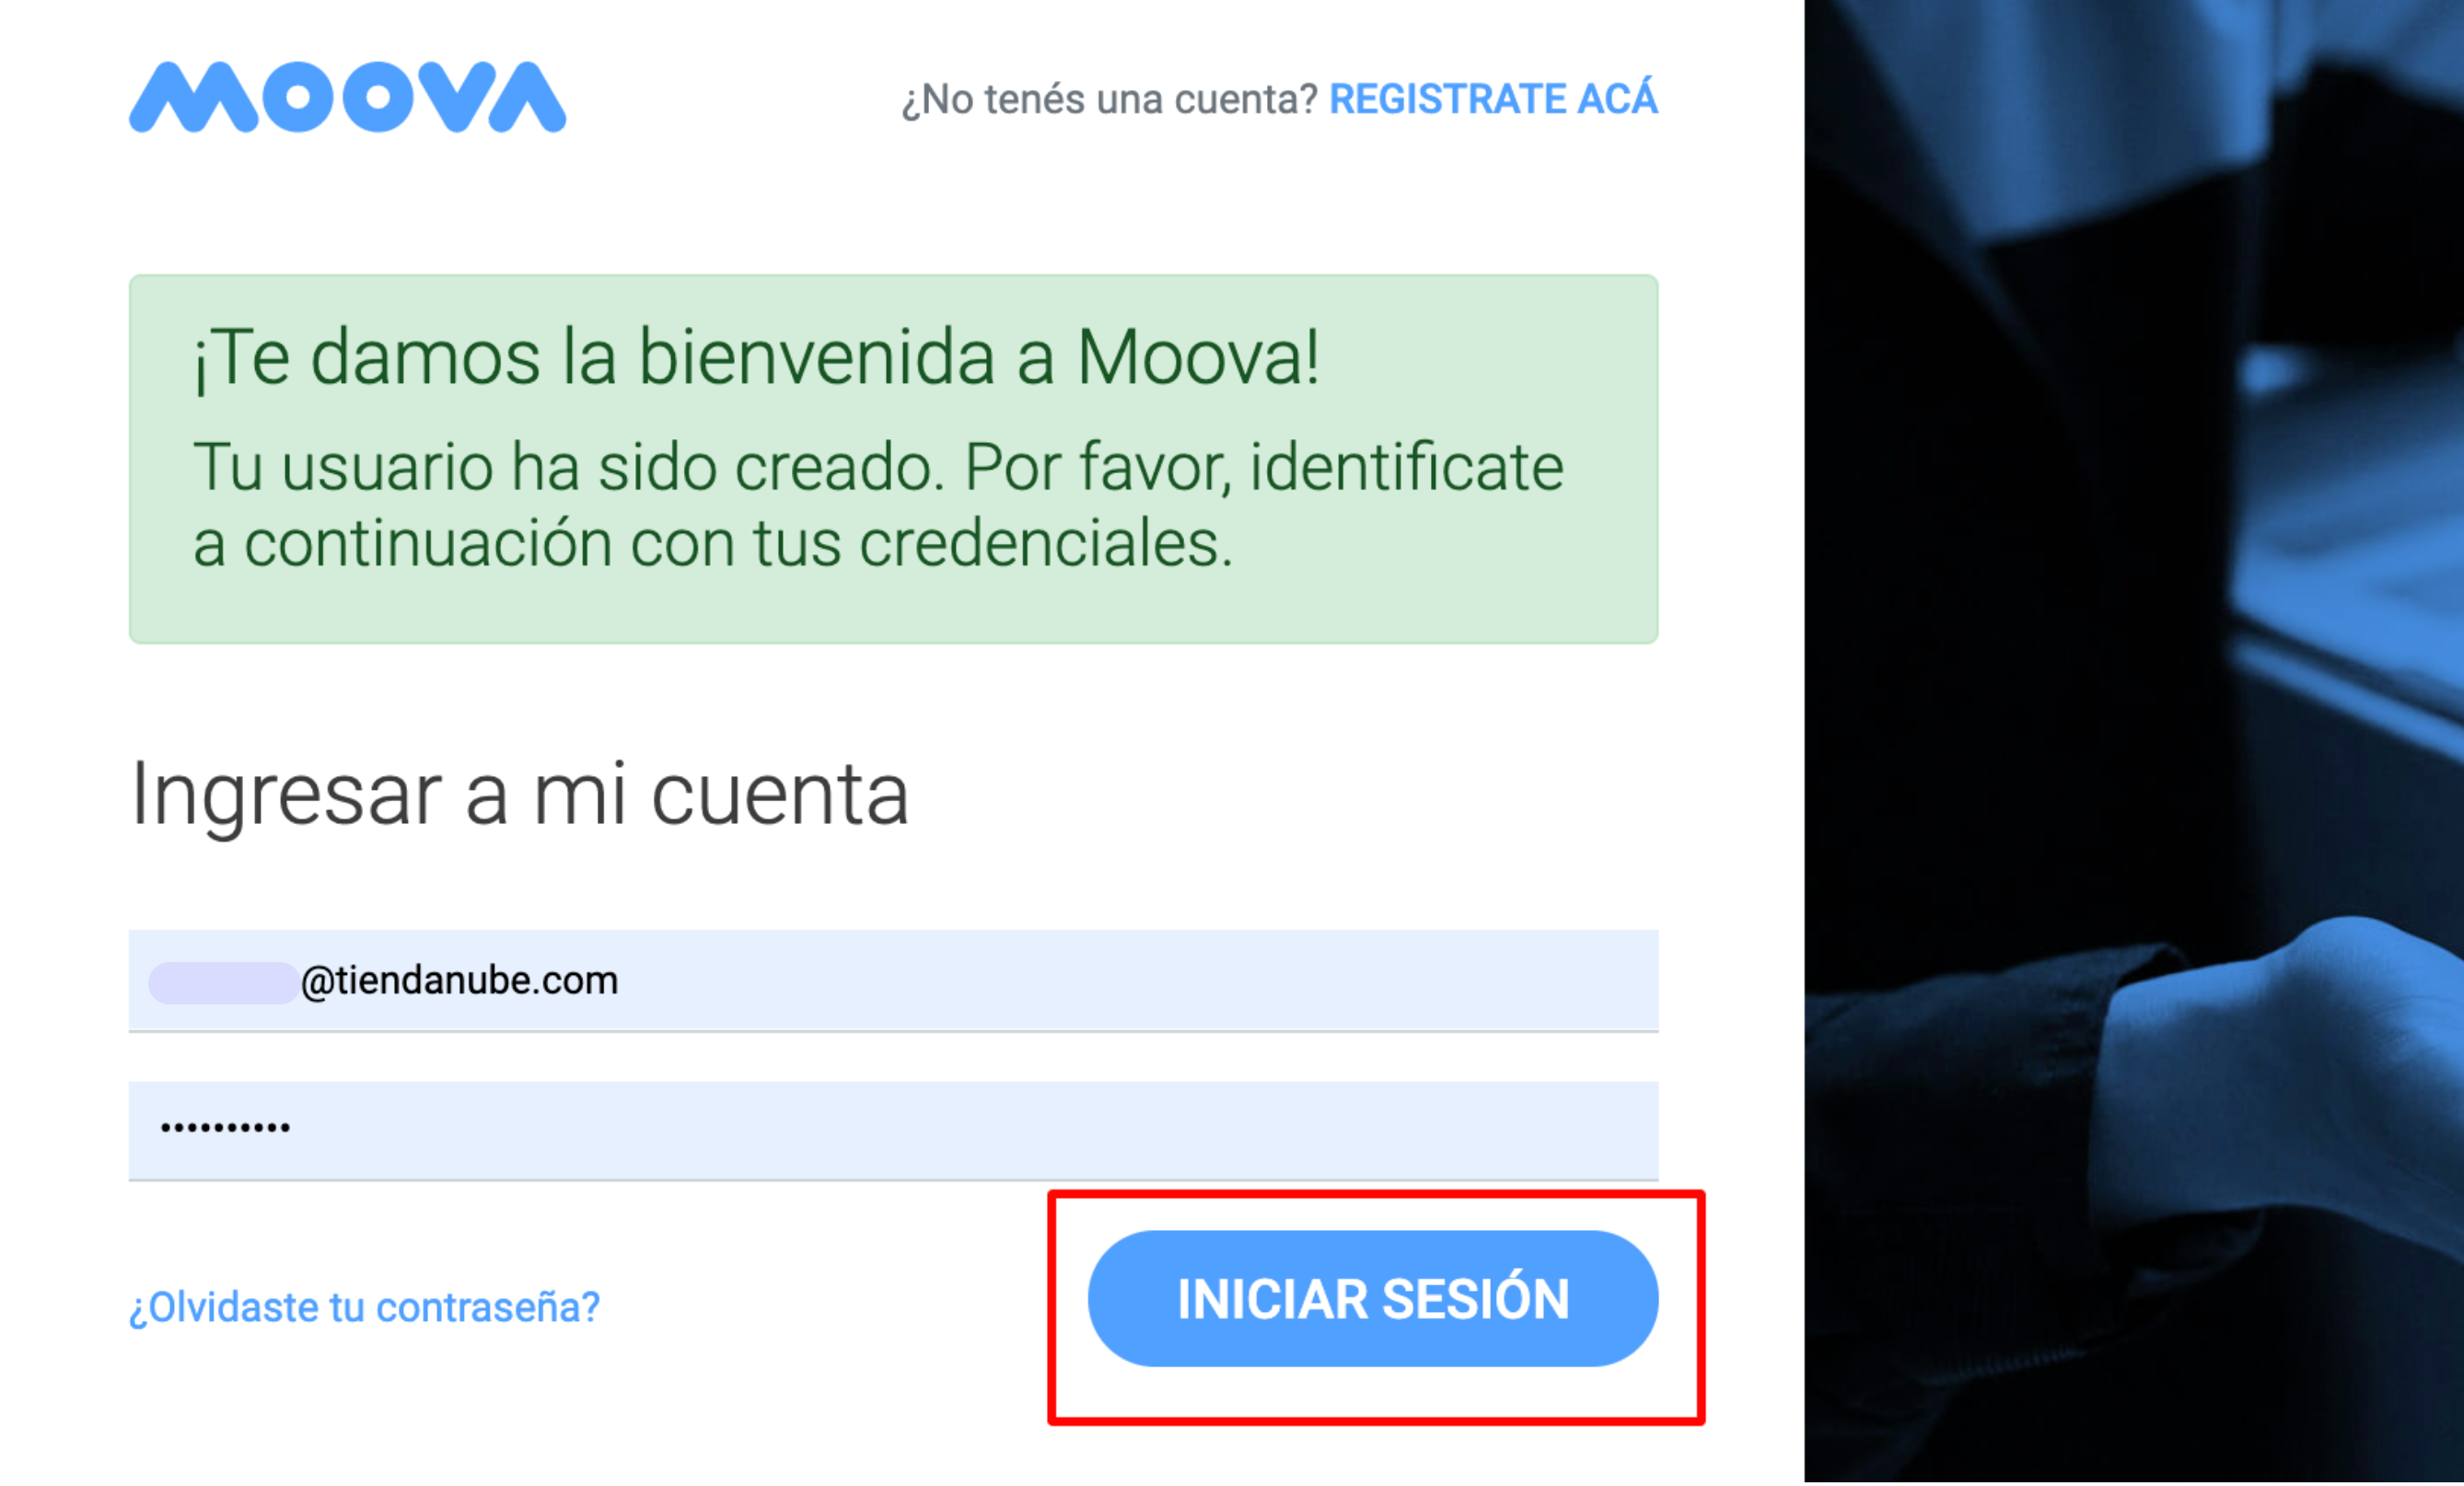 Página de Moova con campos para ingresar el email y contraseña y el botón Iniciar sesipon resaltado